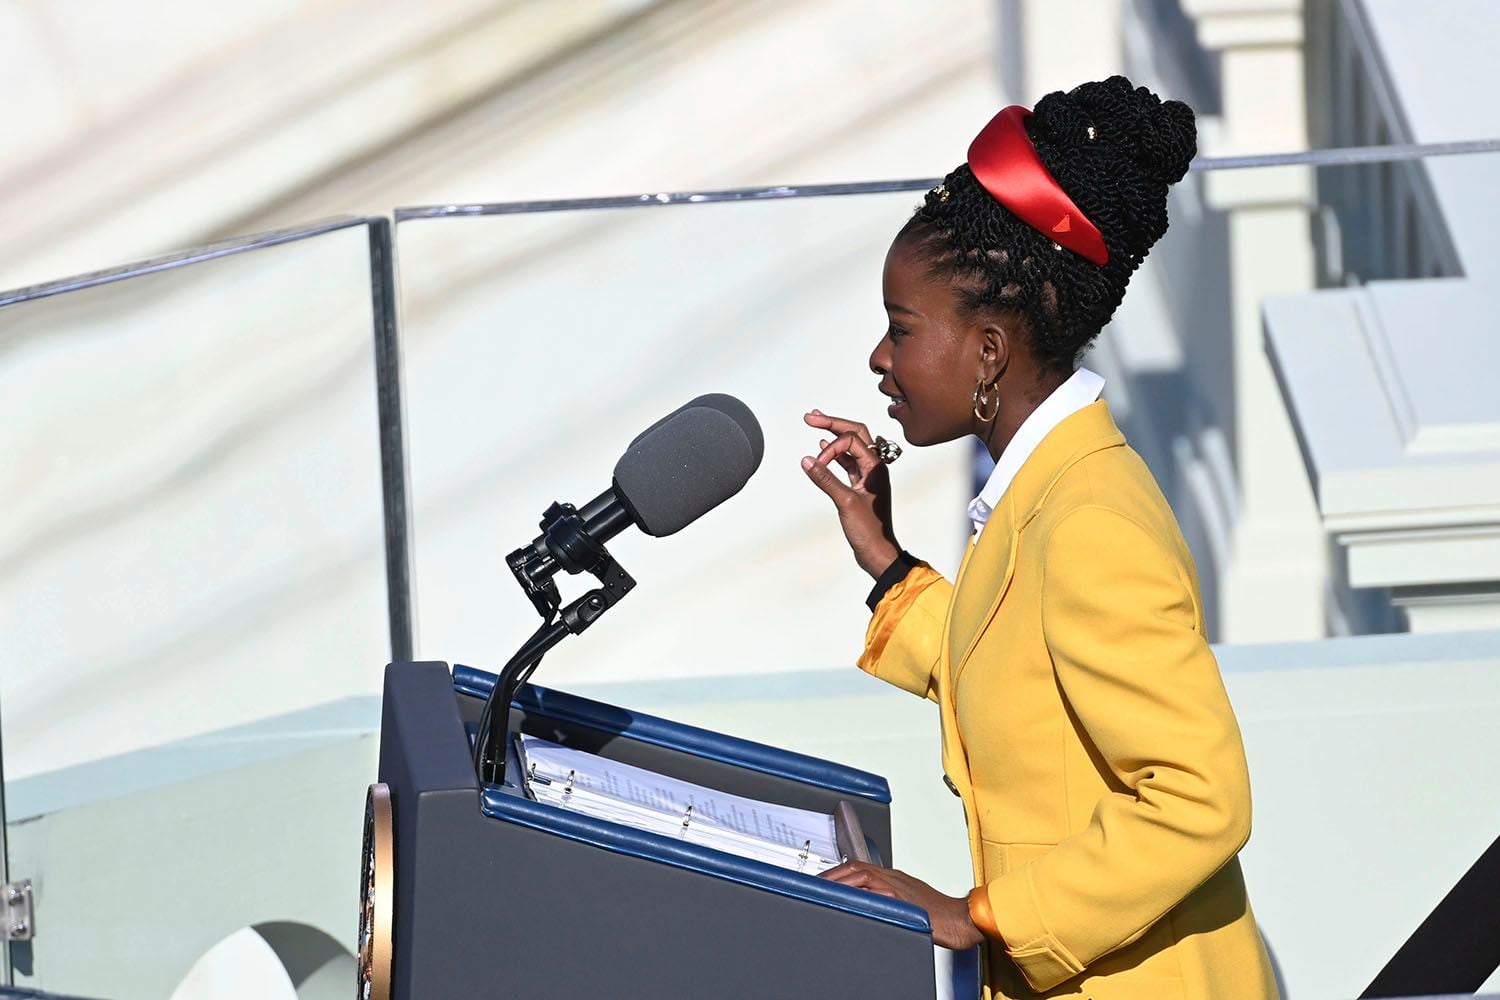 Amanda Gorman recita un poema durante la ceremonia de investidura del presidente Joe Biden frente al Capitolio estadounidense, en Washington, el miércoles 20 de enero del 2021. (Saul Loeb/Pool Photo via AP)